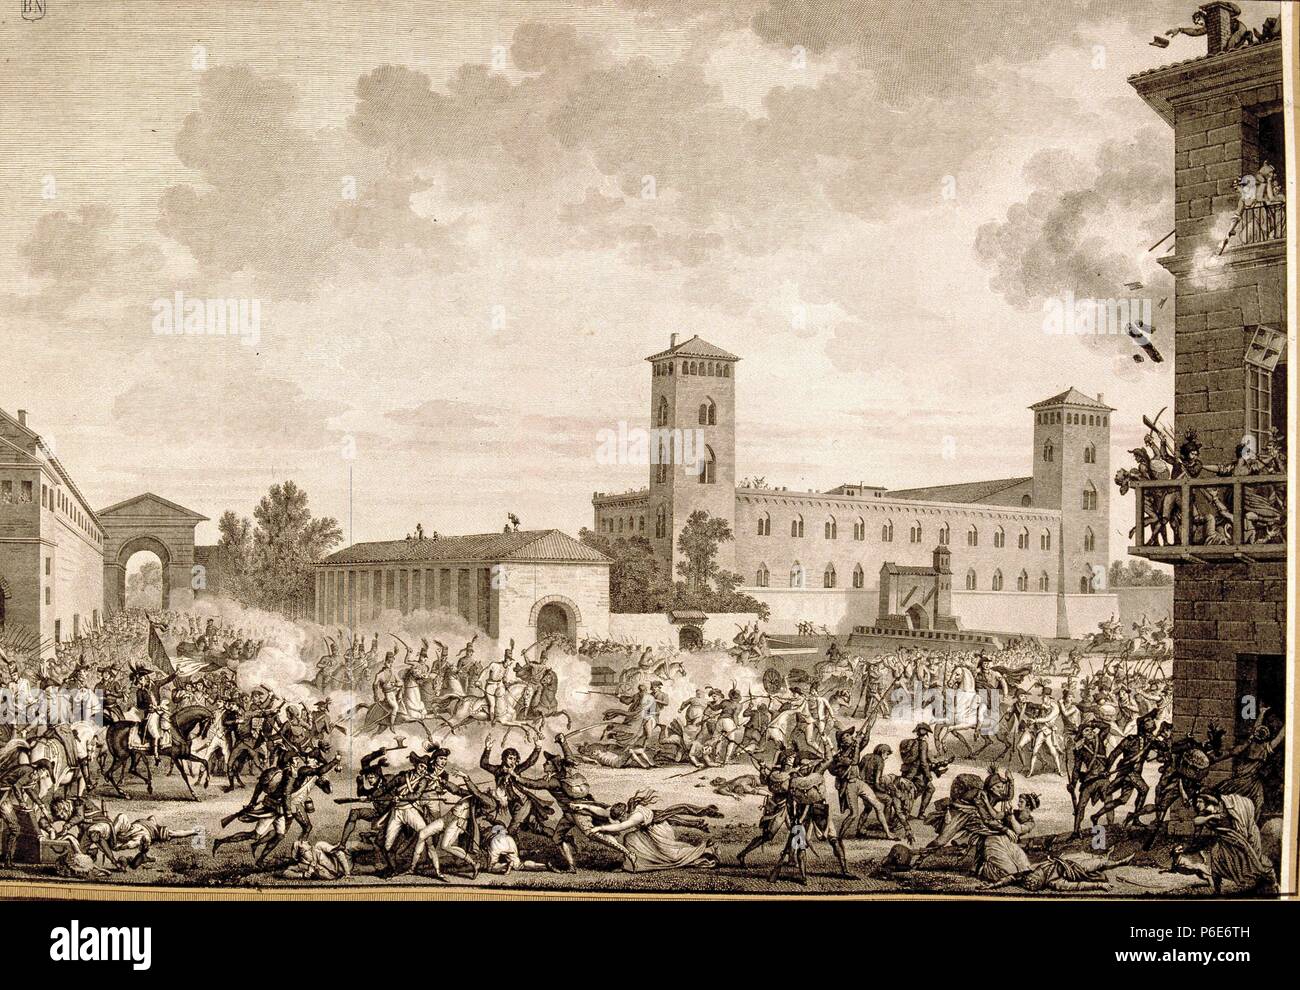 HISTORIA DE FRANCIA , SIGLO XVIII. REVUELTA DE PAVIA EL 27 DE MAYO DE 1795. BIBLIOTECA NACIONAL. MADRID. Stock Photo